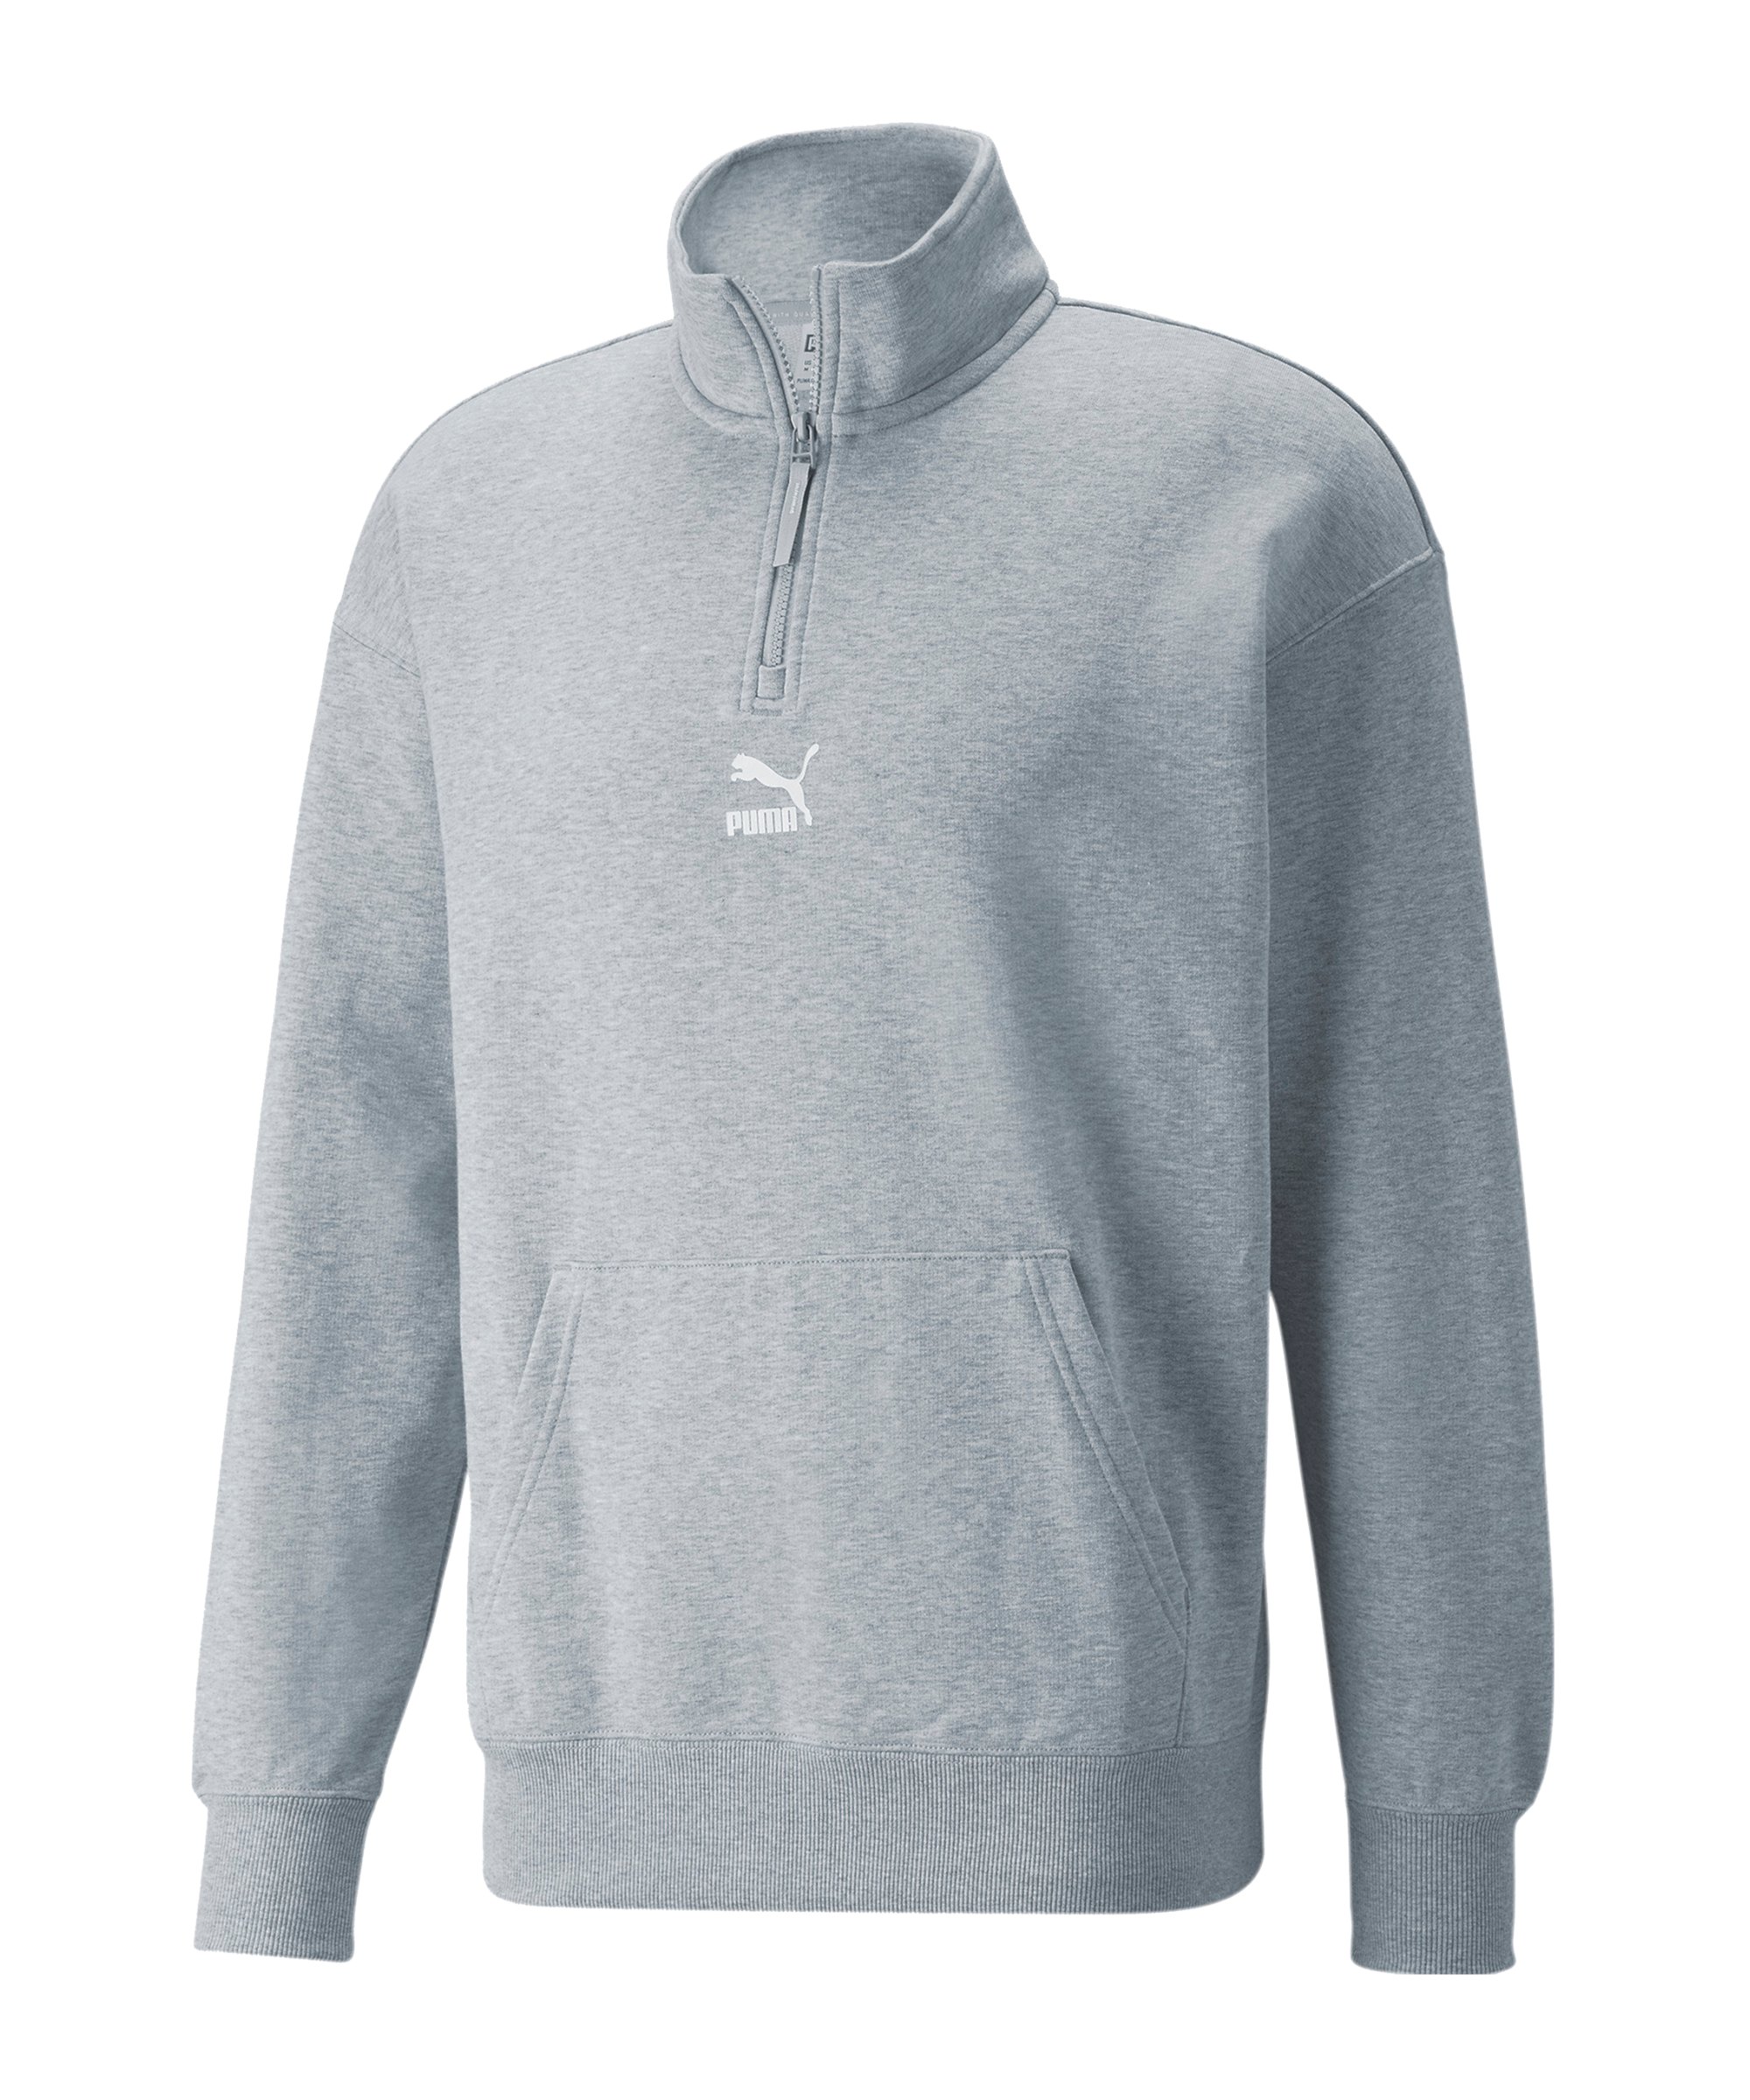 PUMA Classics Zip Sweatshirt Grau F04 - grau